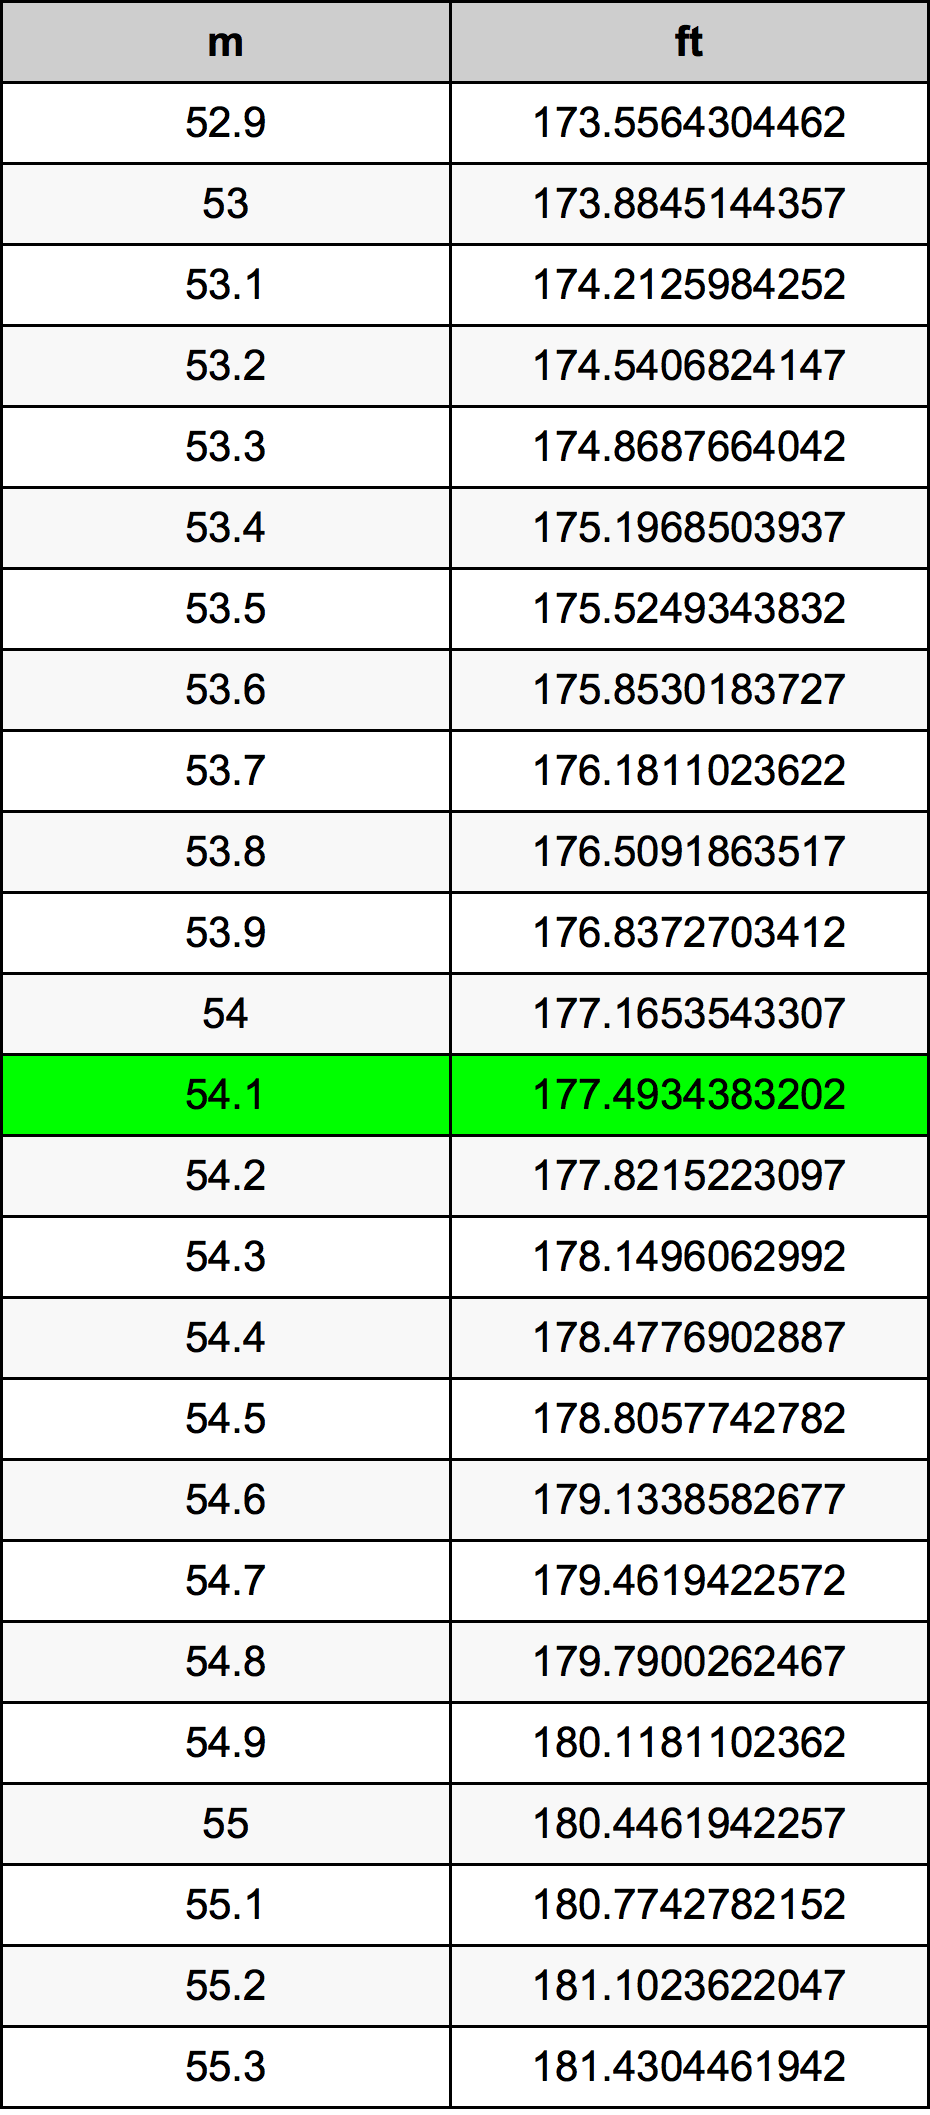 54.1 Metru tabelul de conversie